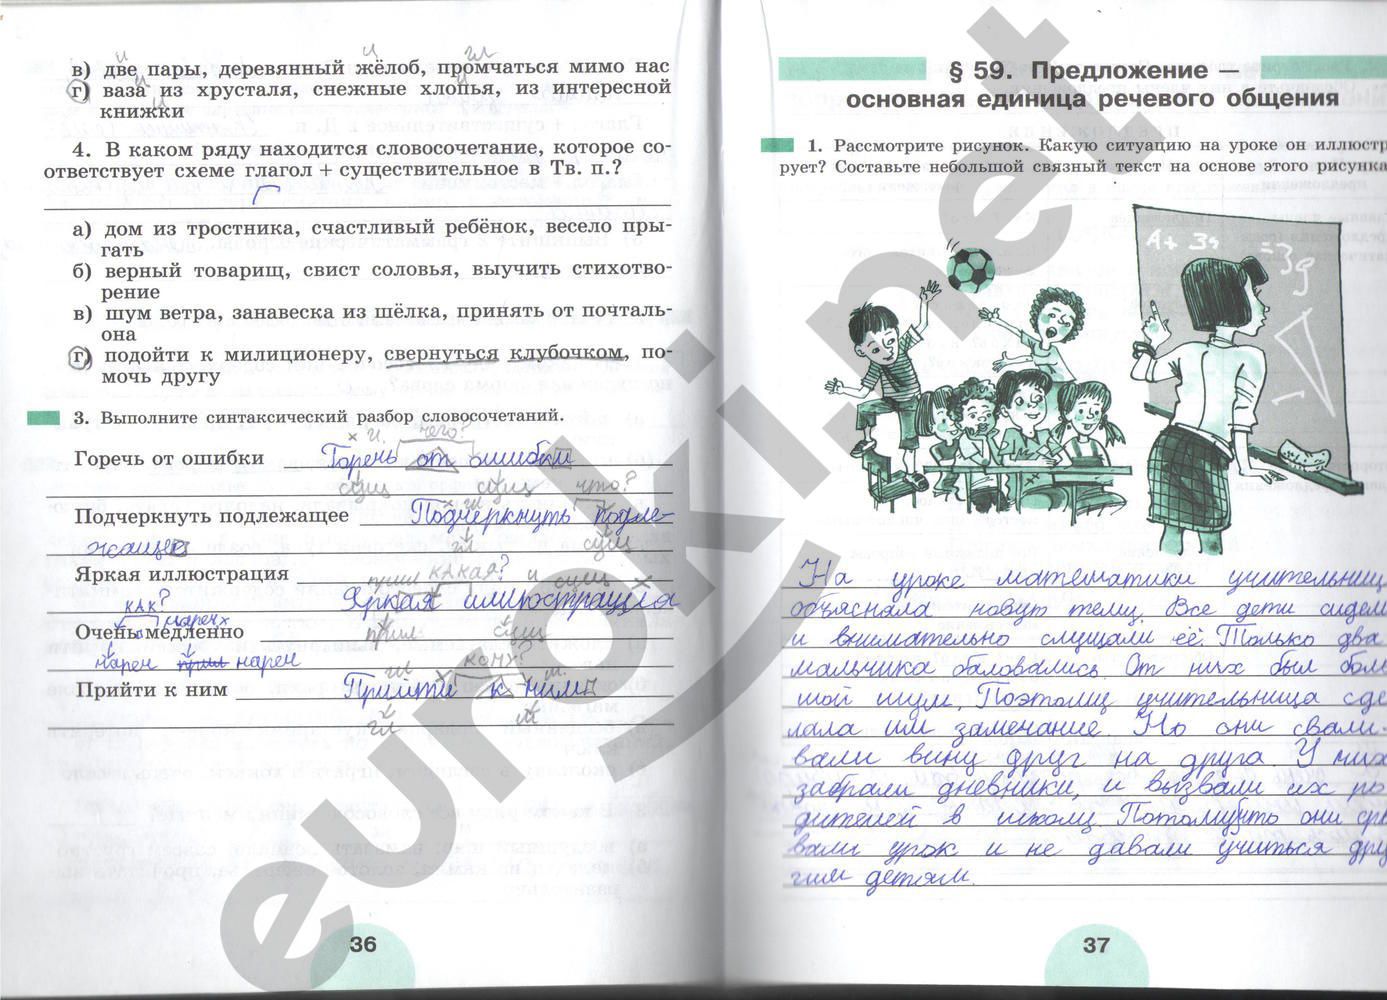 ГДЗ Русский язык 5 класс - стр. 36-37